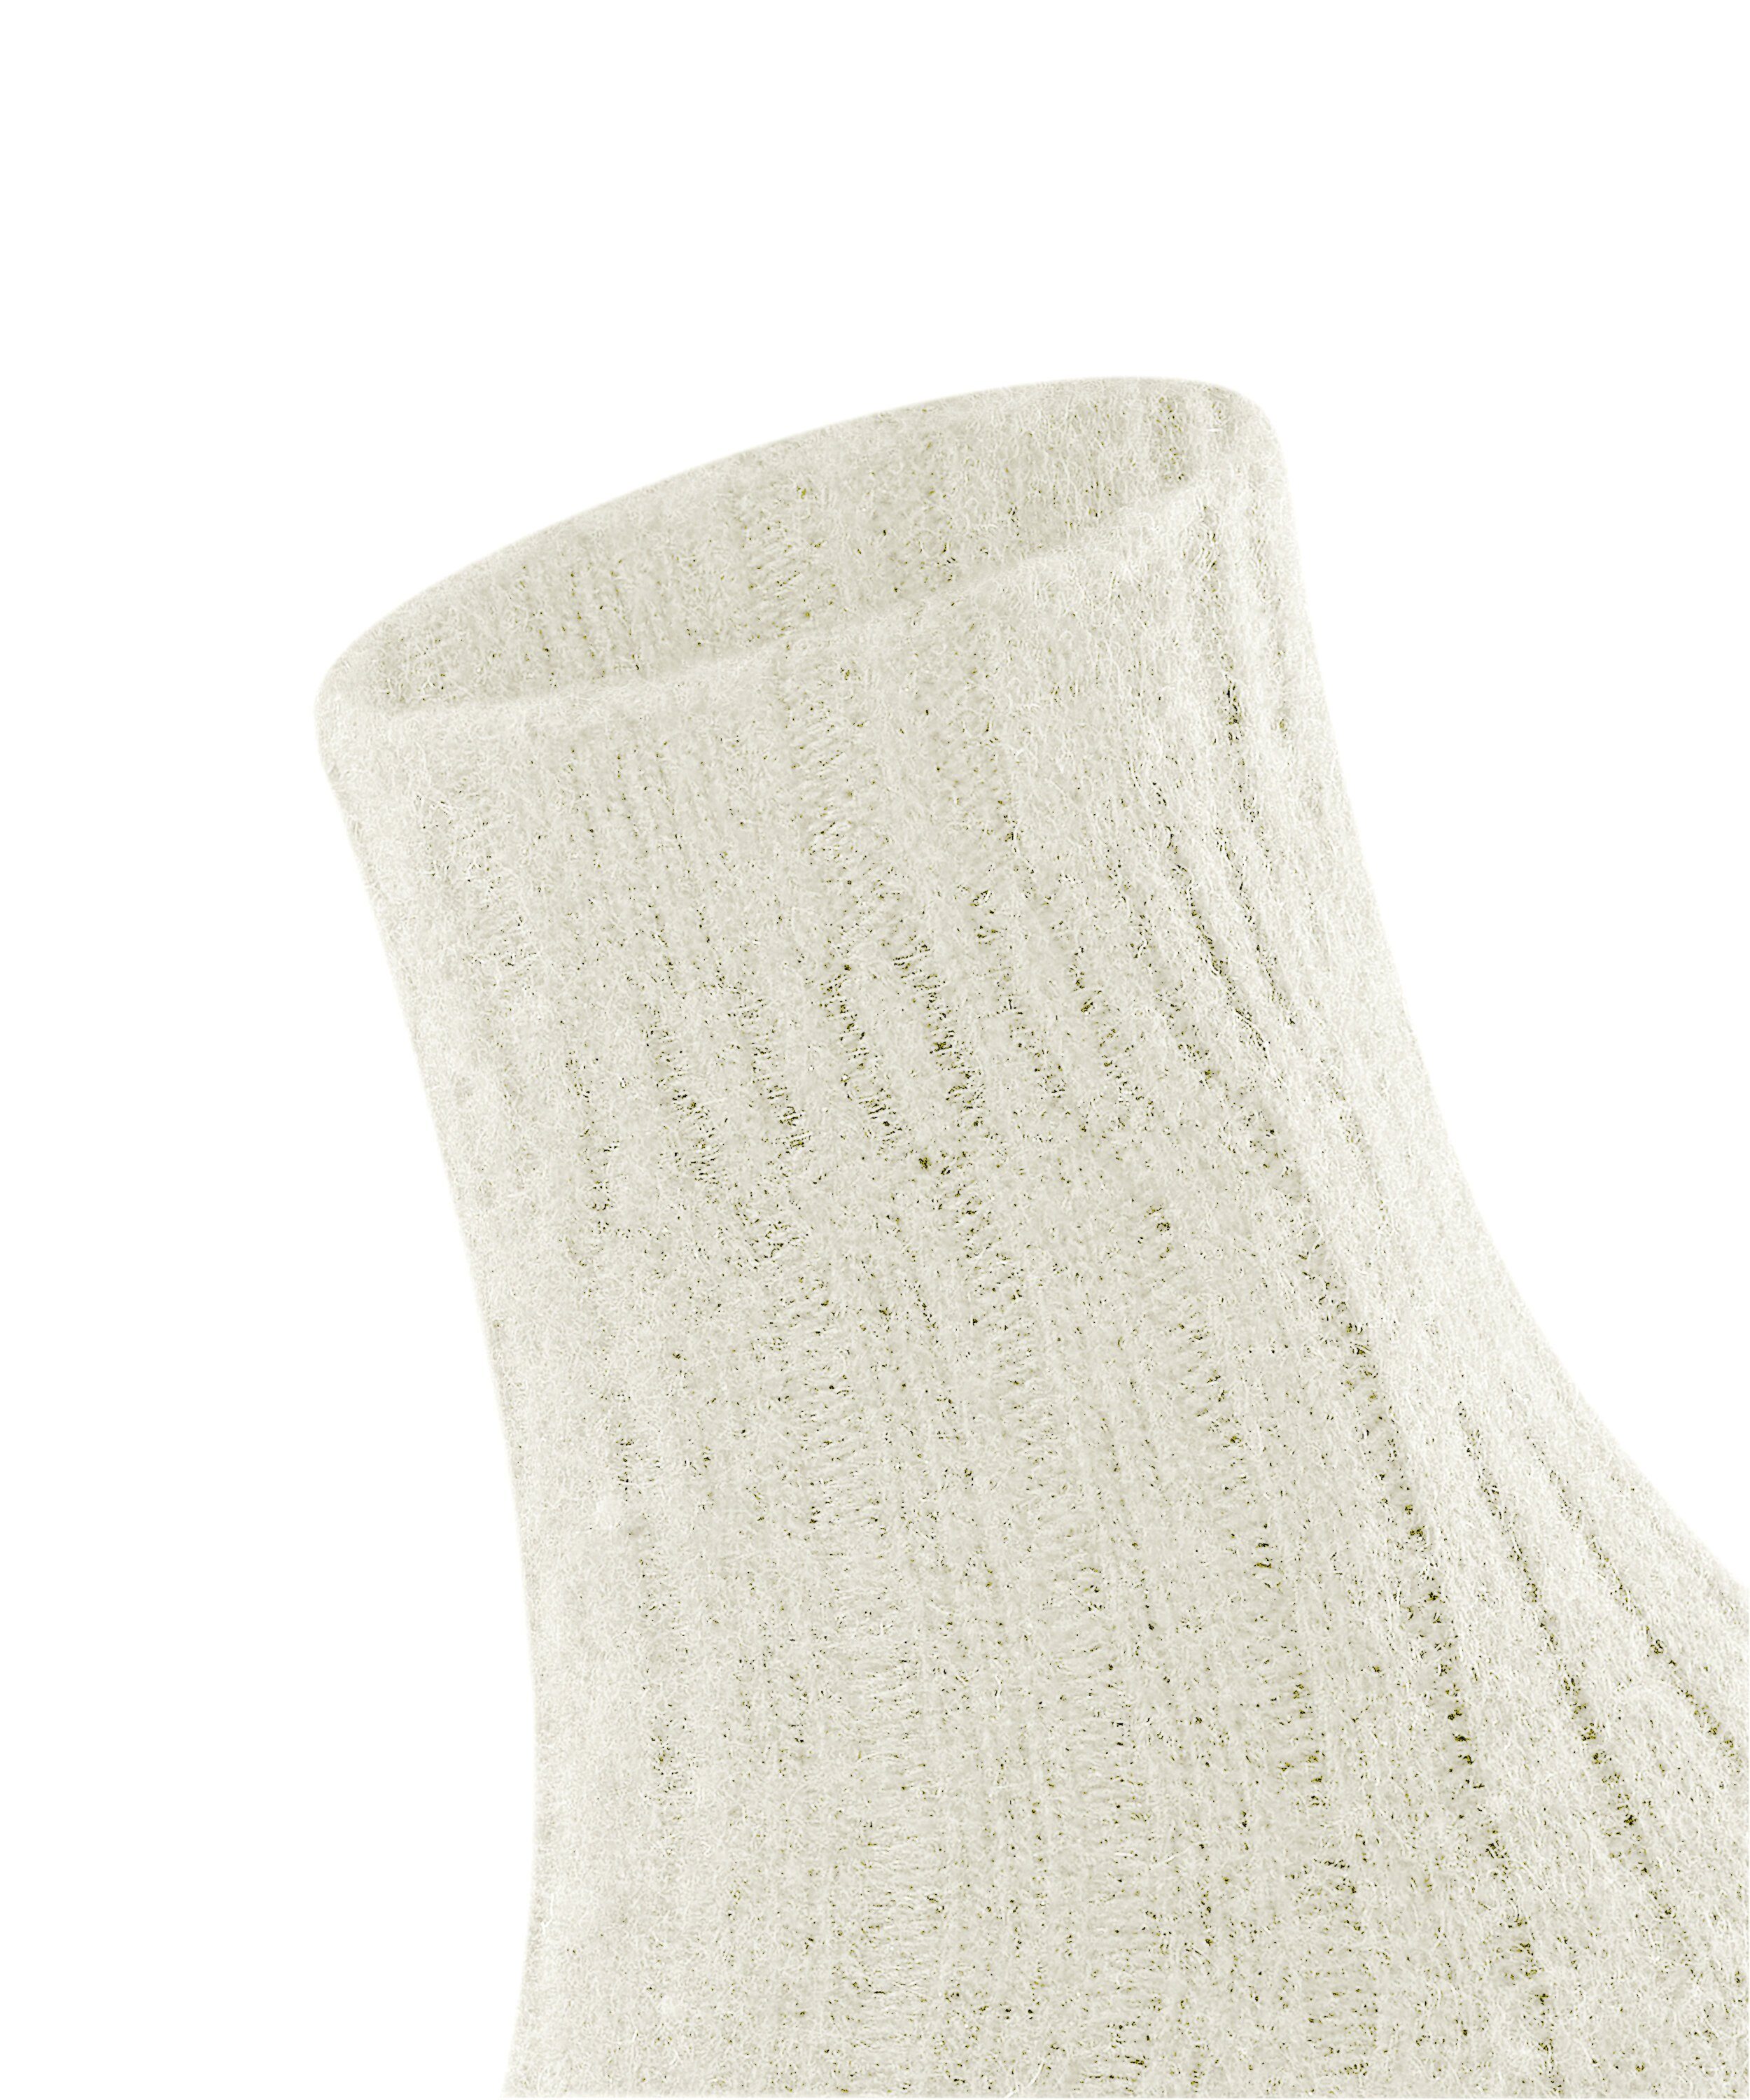 (1-Paar) Bedsock off-white Socken FALKE (2049) Rib